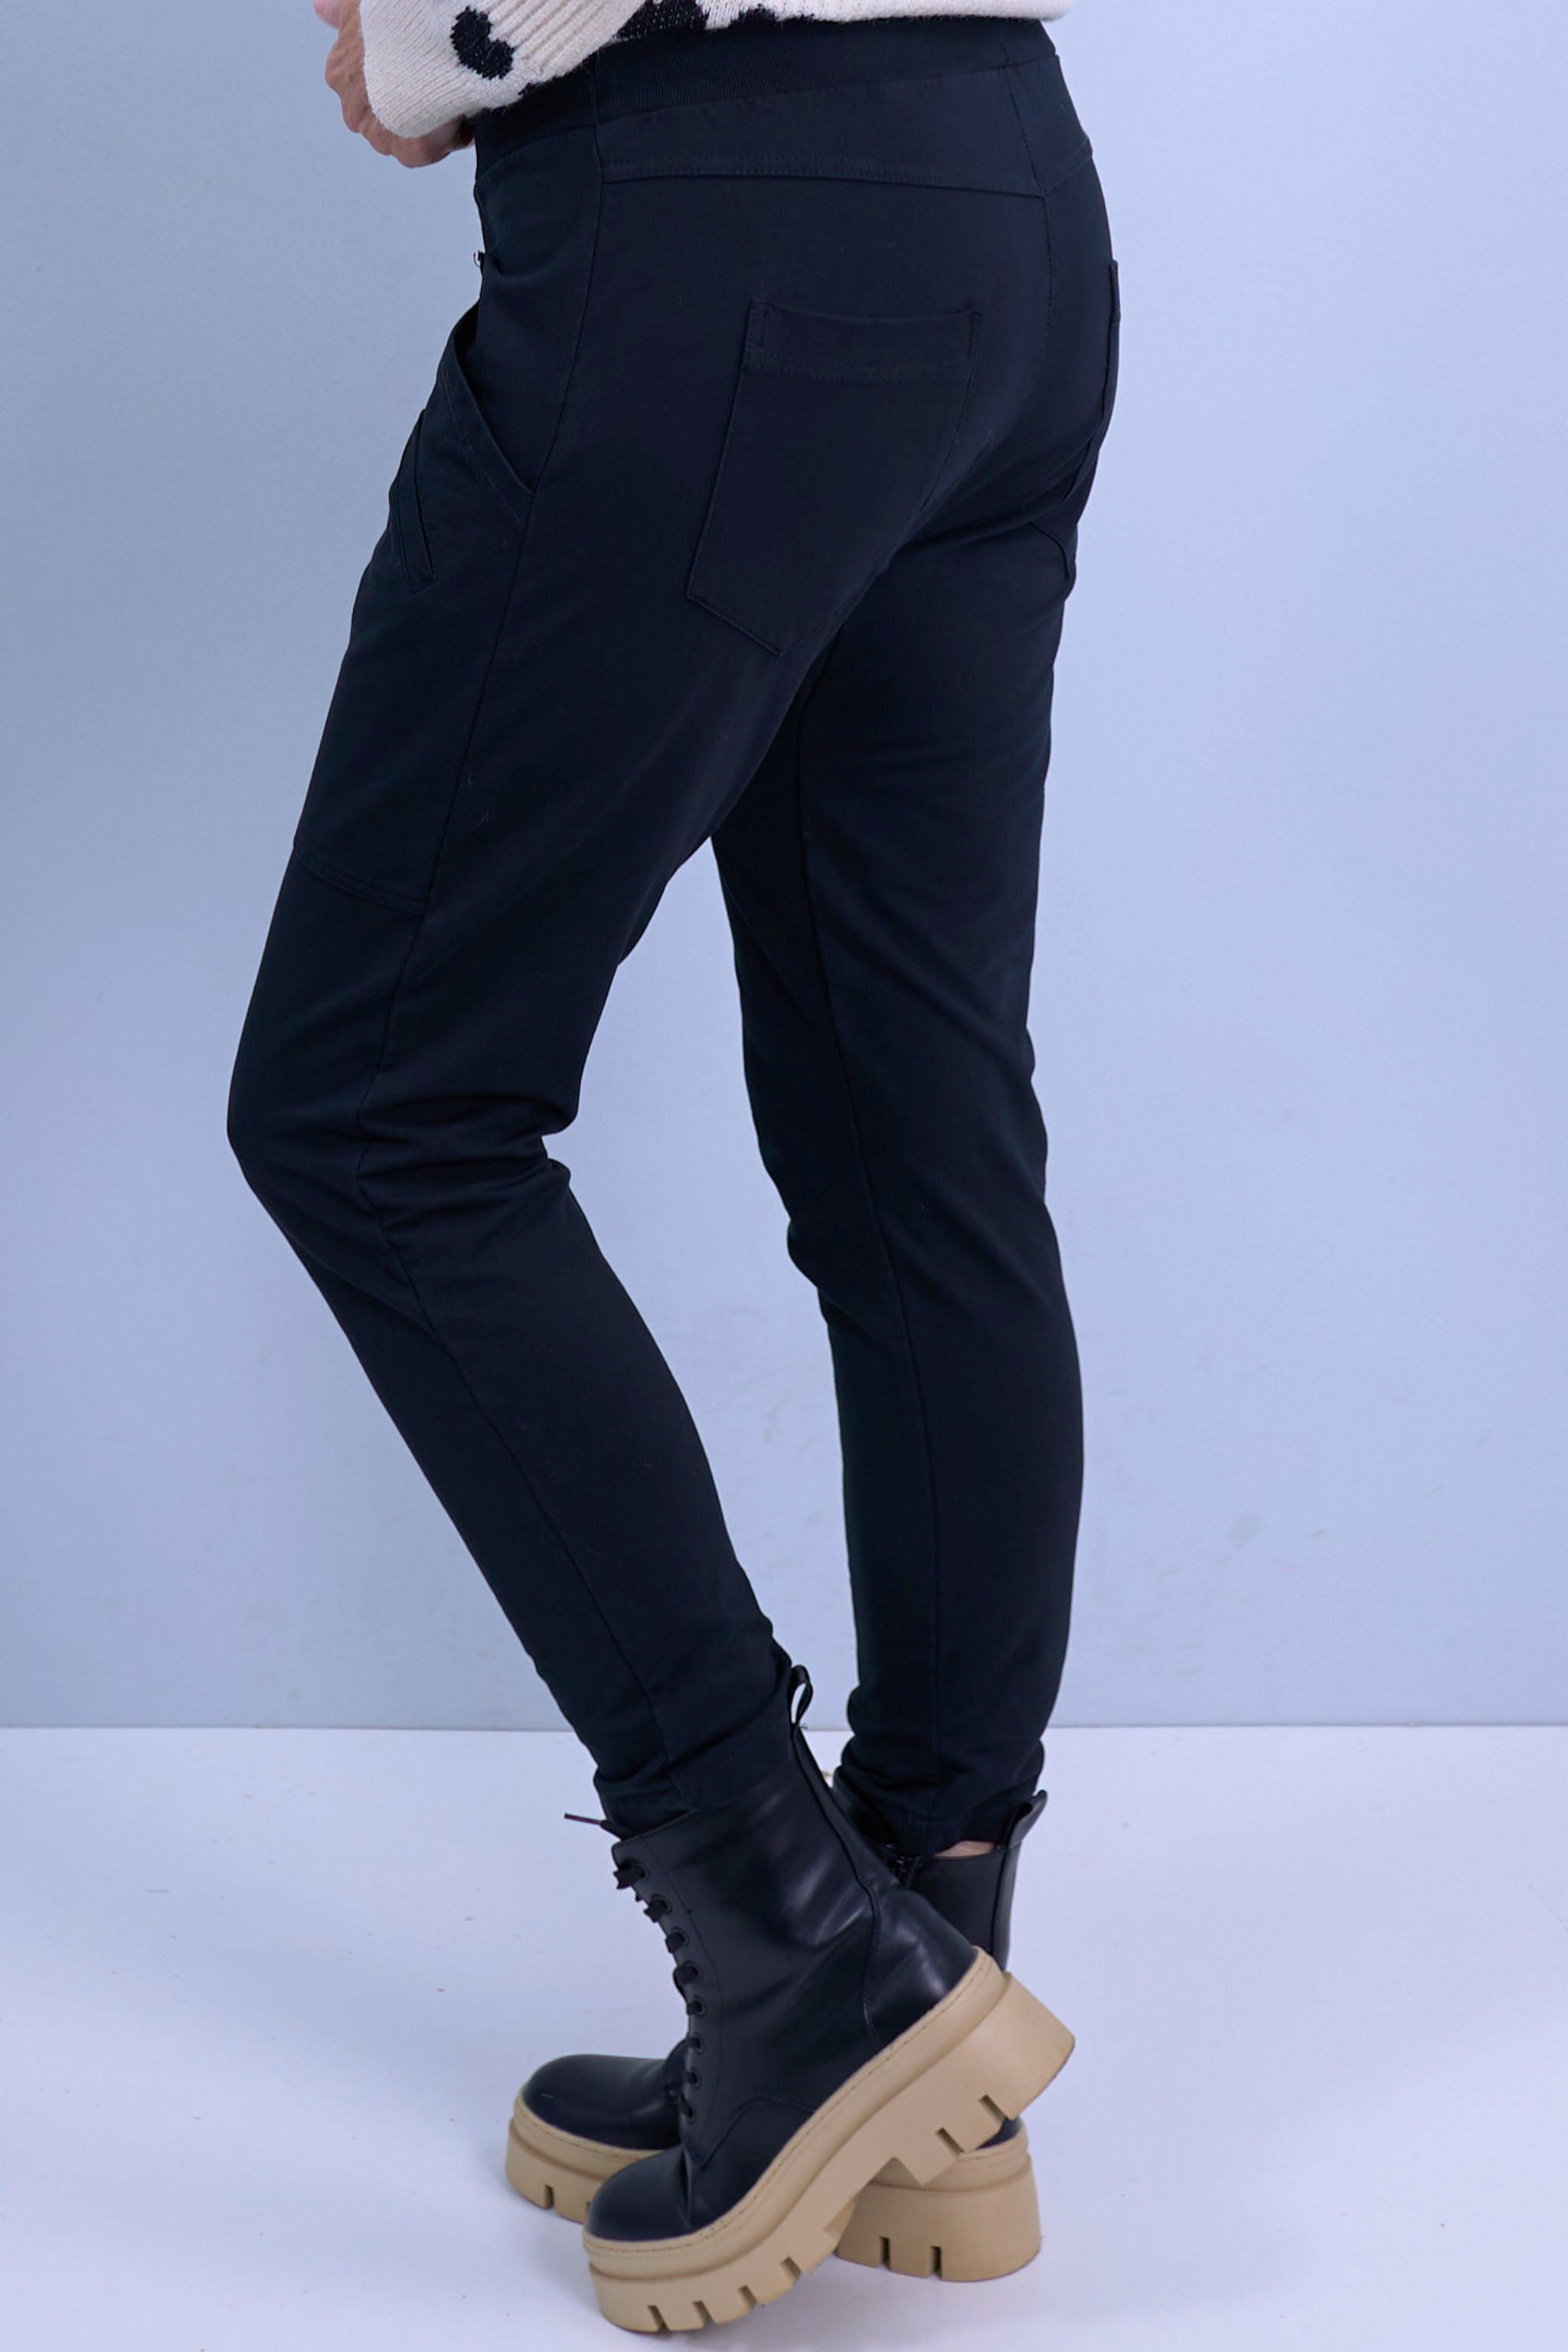 Jog pants with large pockets, black